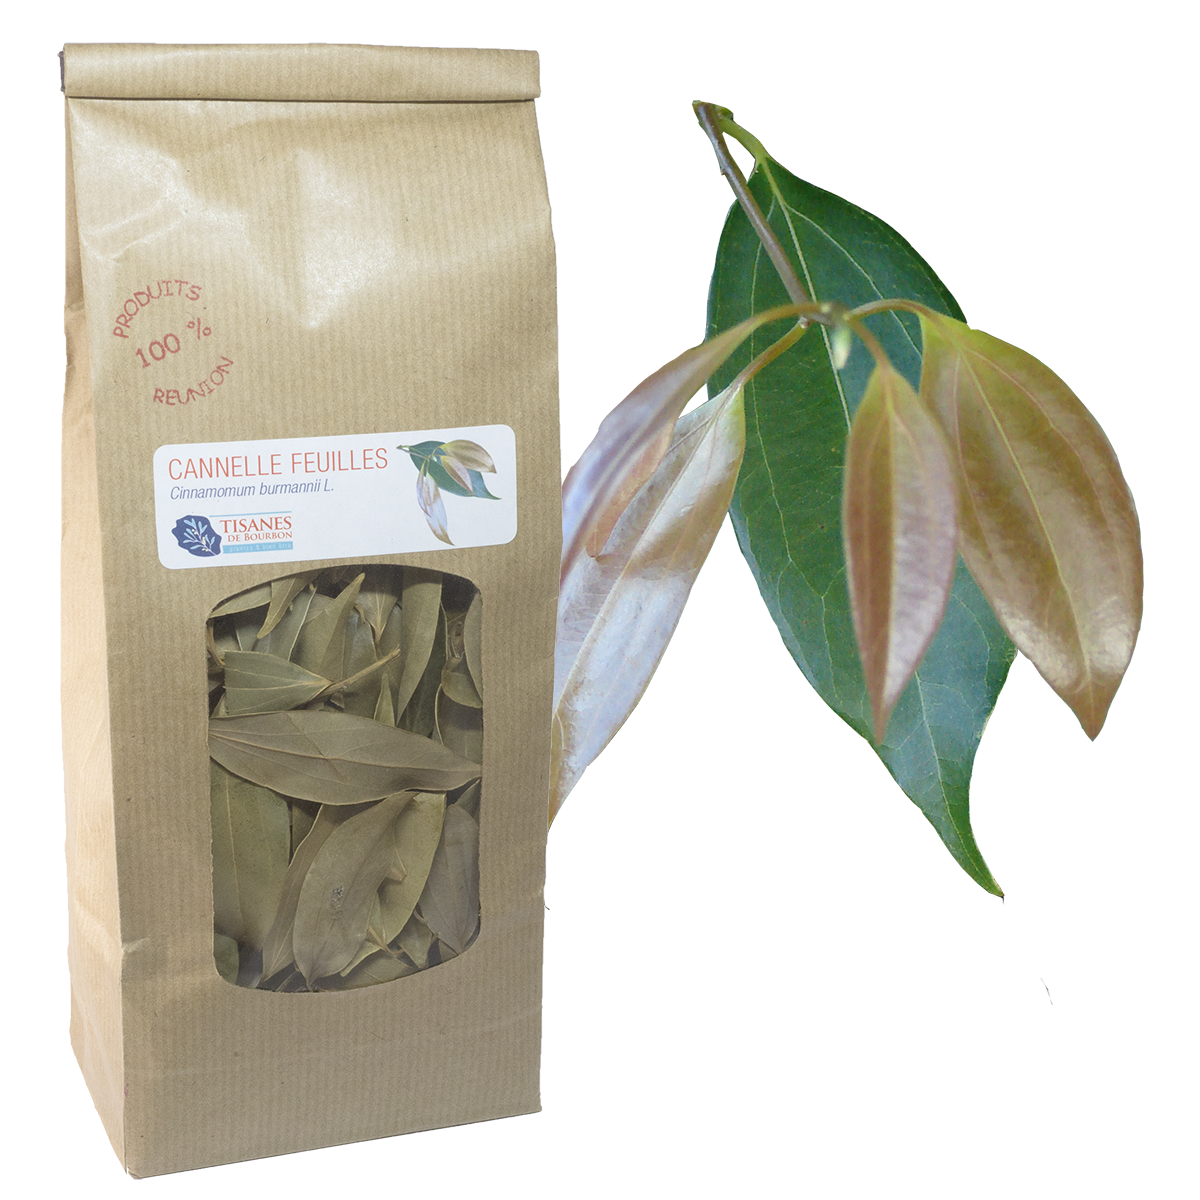 Cannelle feuilles (Cinnamomum burmannii L.), feuilles séchées, sachet –  Tisanes de Bourbon